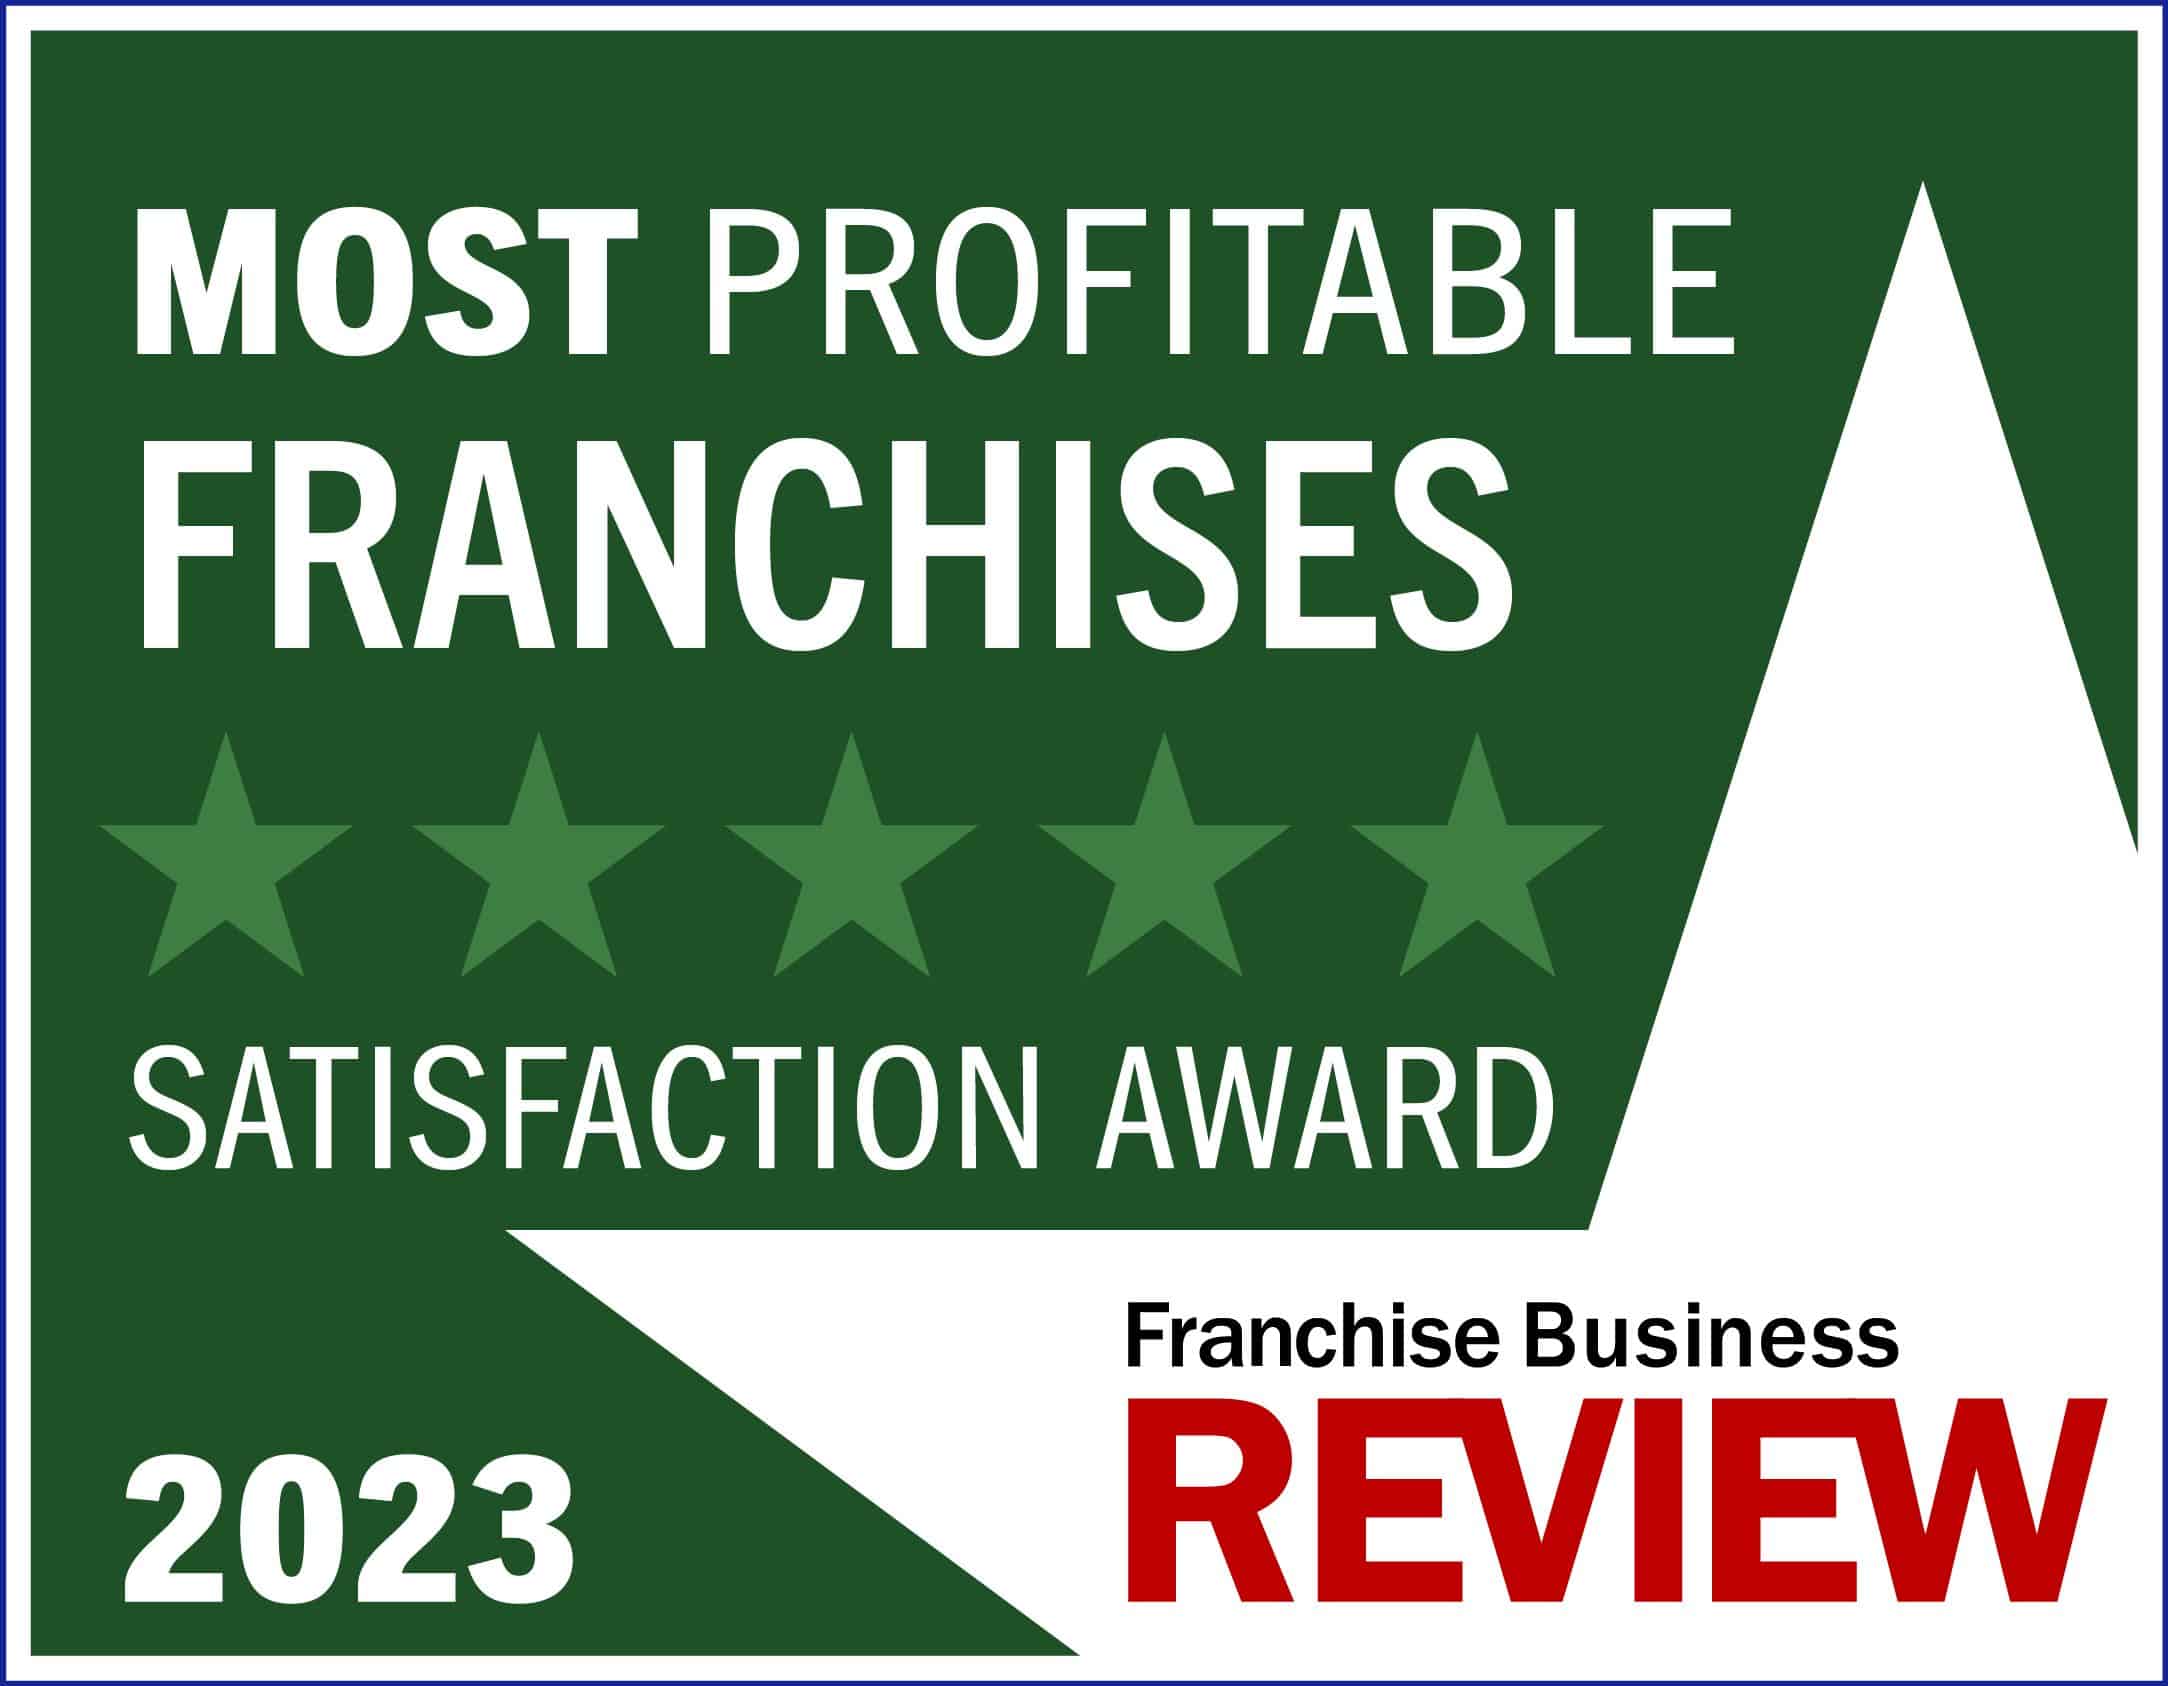 Franchise Business Review Most Profitable Franchises 2023